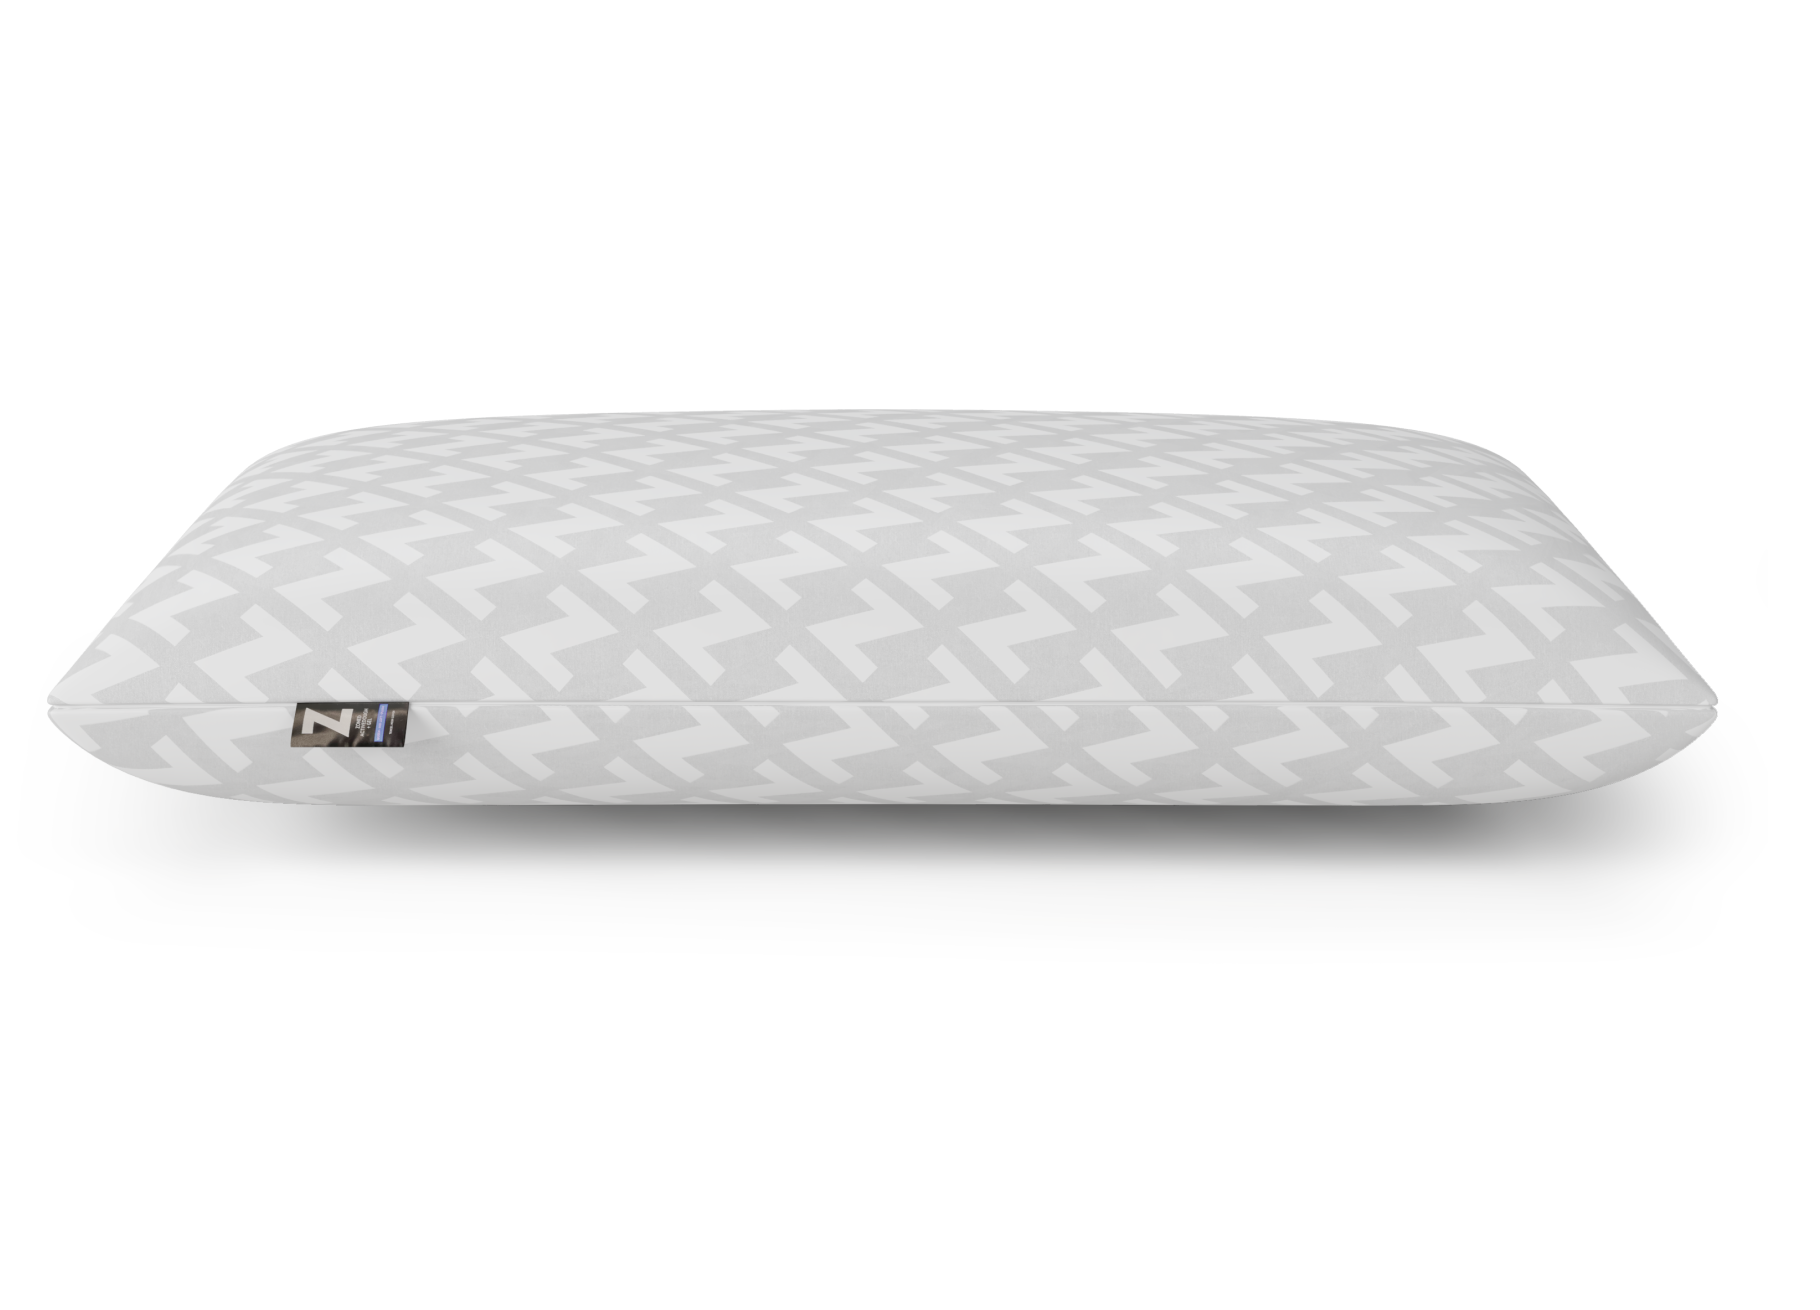 https://mattresskingok.com/cdn/shop/products/ActiveDough-pillow-cooling-mattress-king-side2.png?v=1676158015